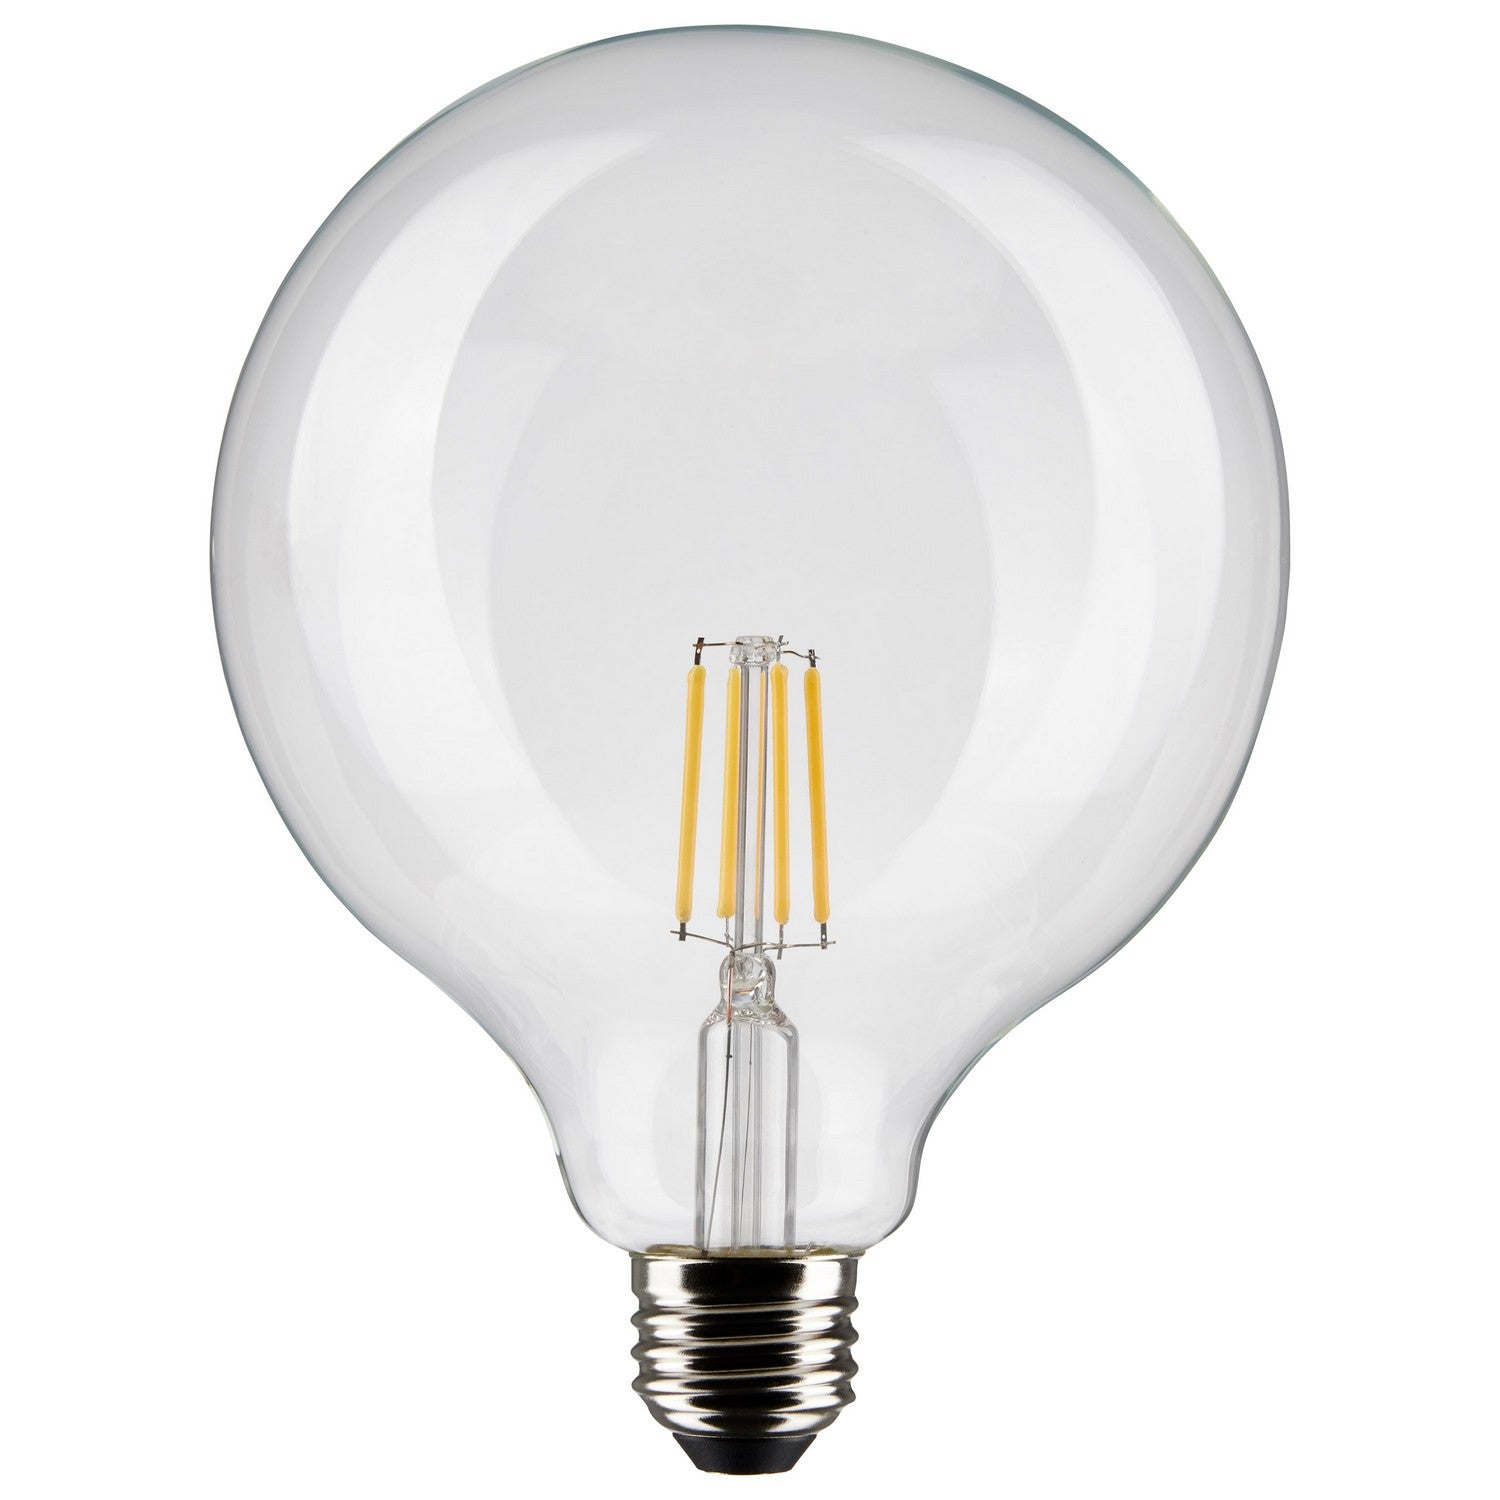 Satco - S21248 - Light Bulb - Clear